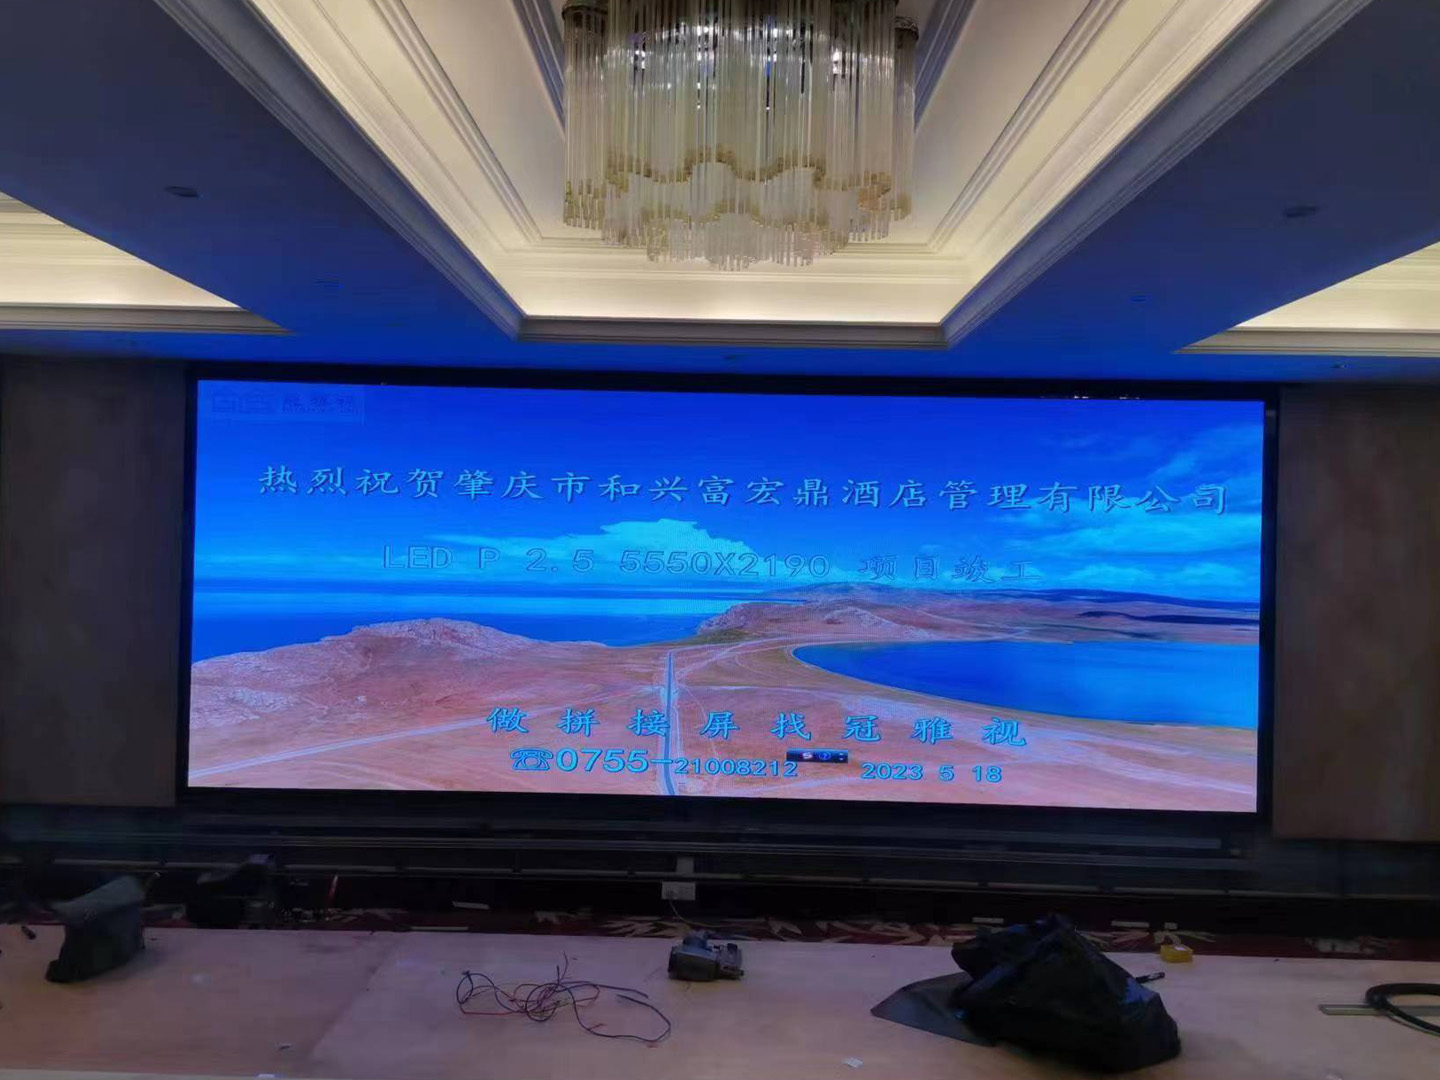 肇庆市某酒店管理公司LED,P2.5大屏